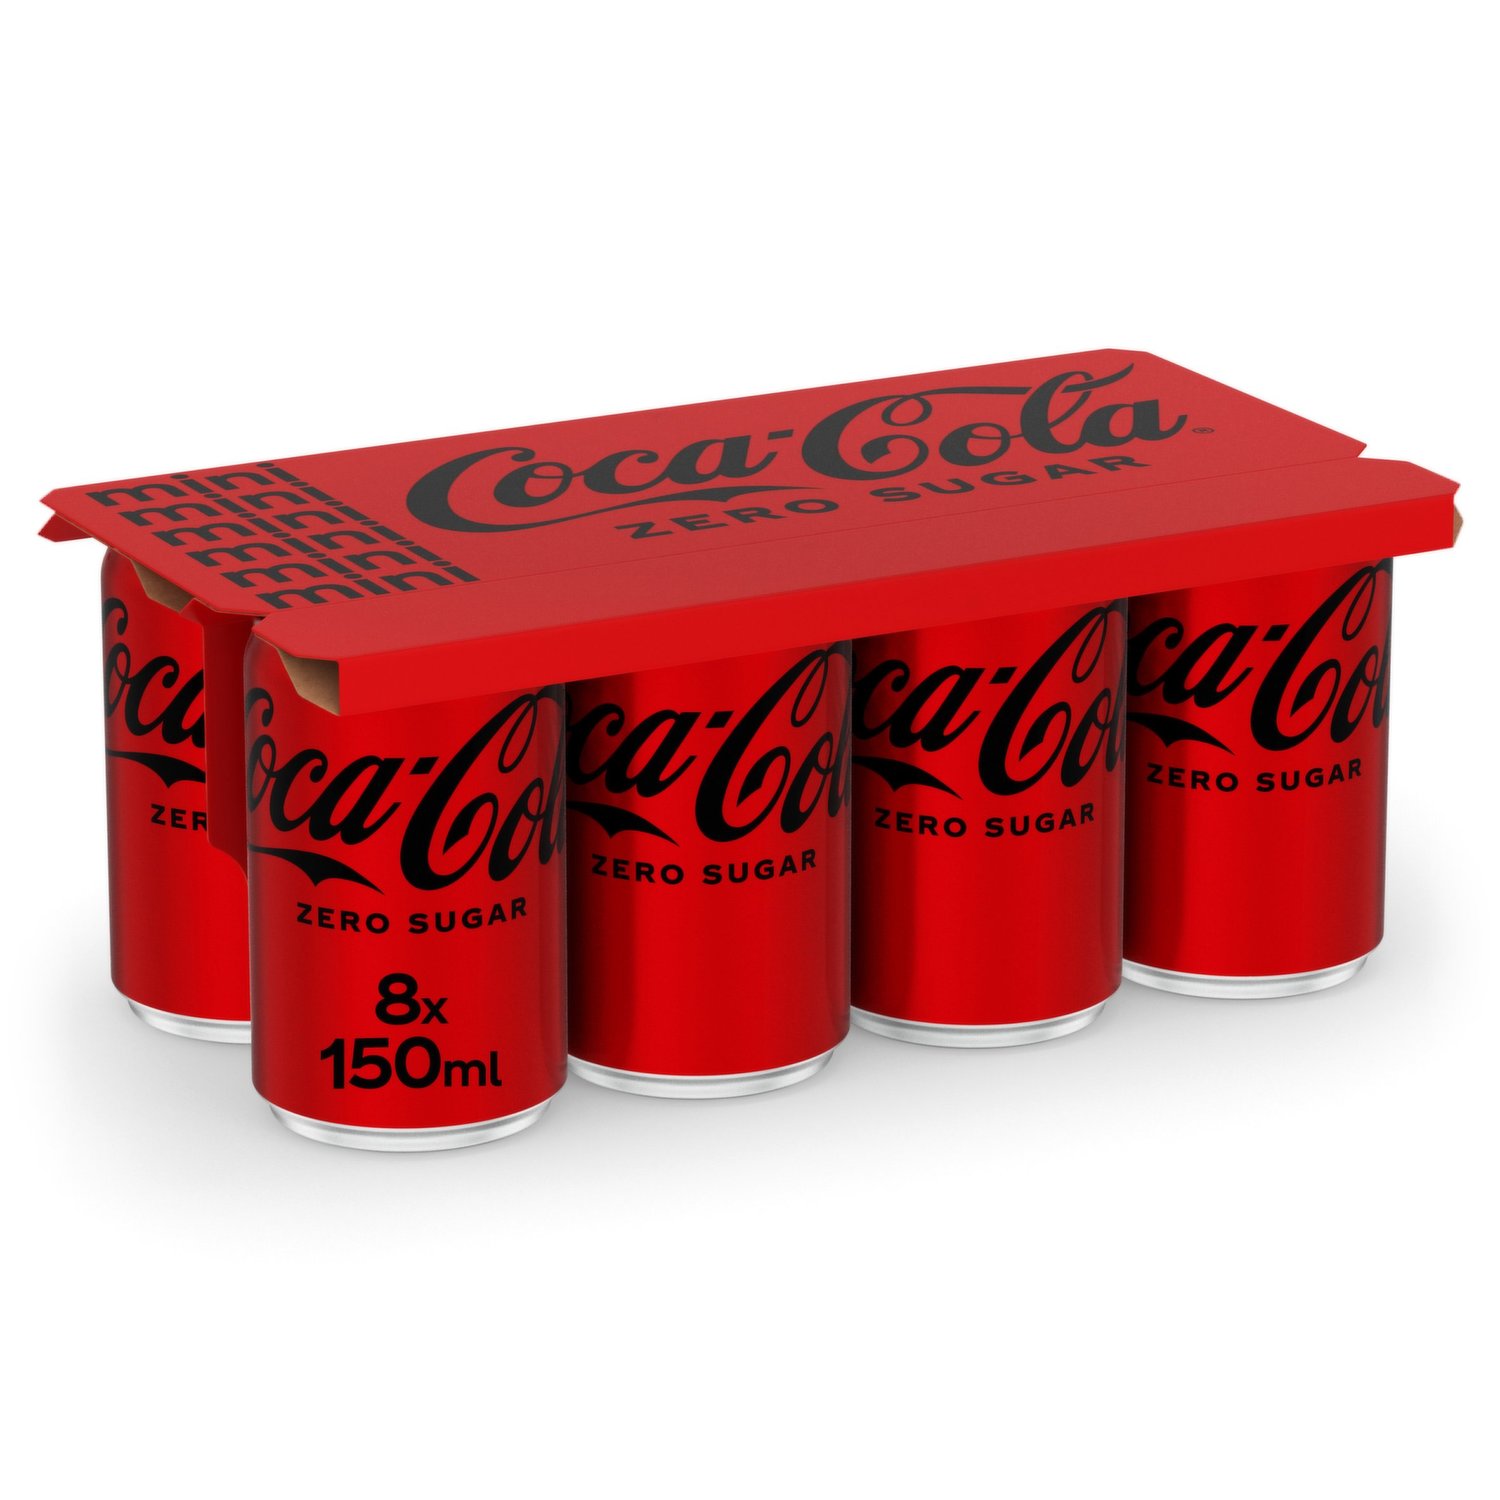 Coca-Cola Mini Zero Sugar 8 x 150ml - Dunnes Stores